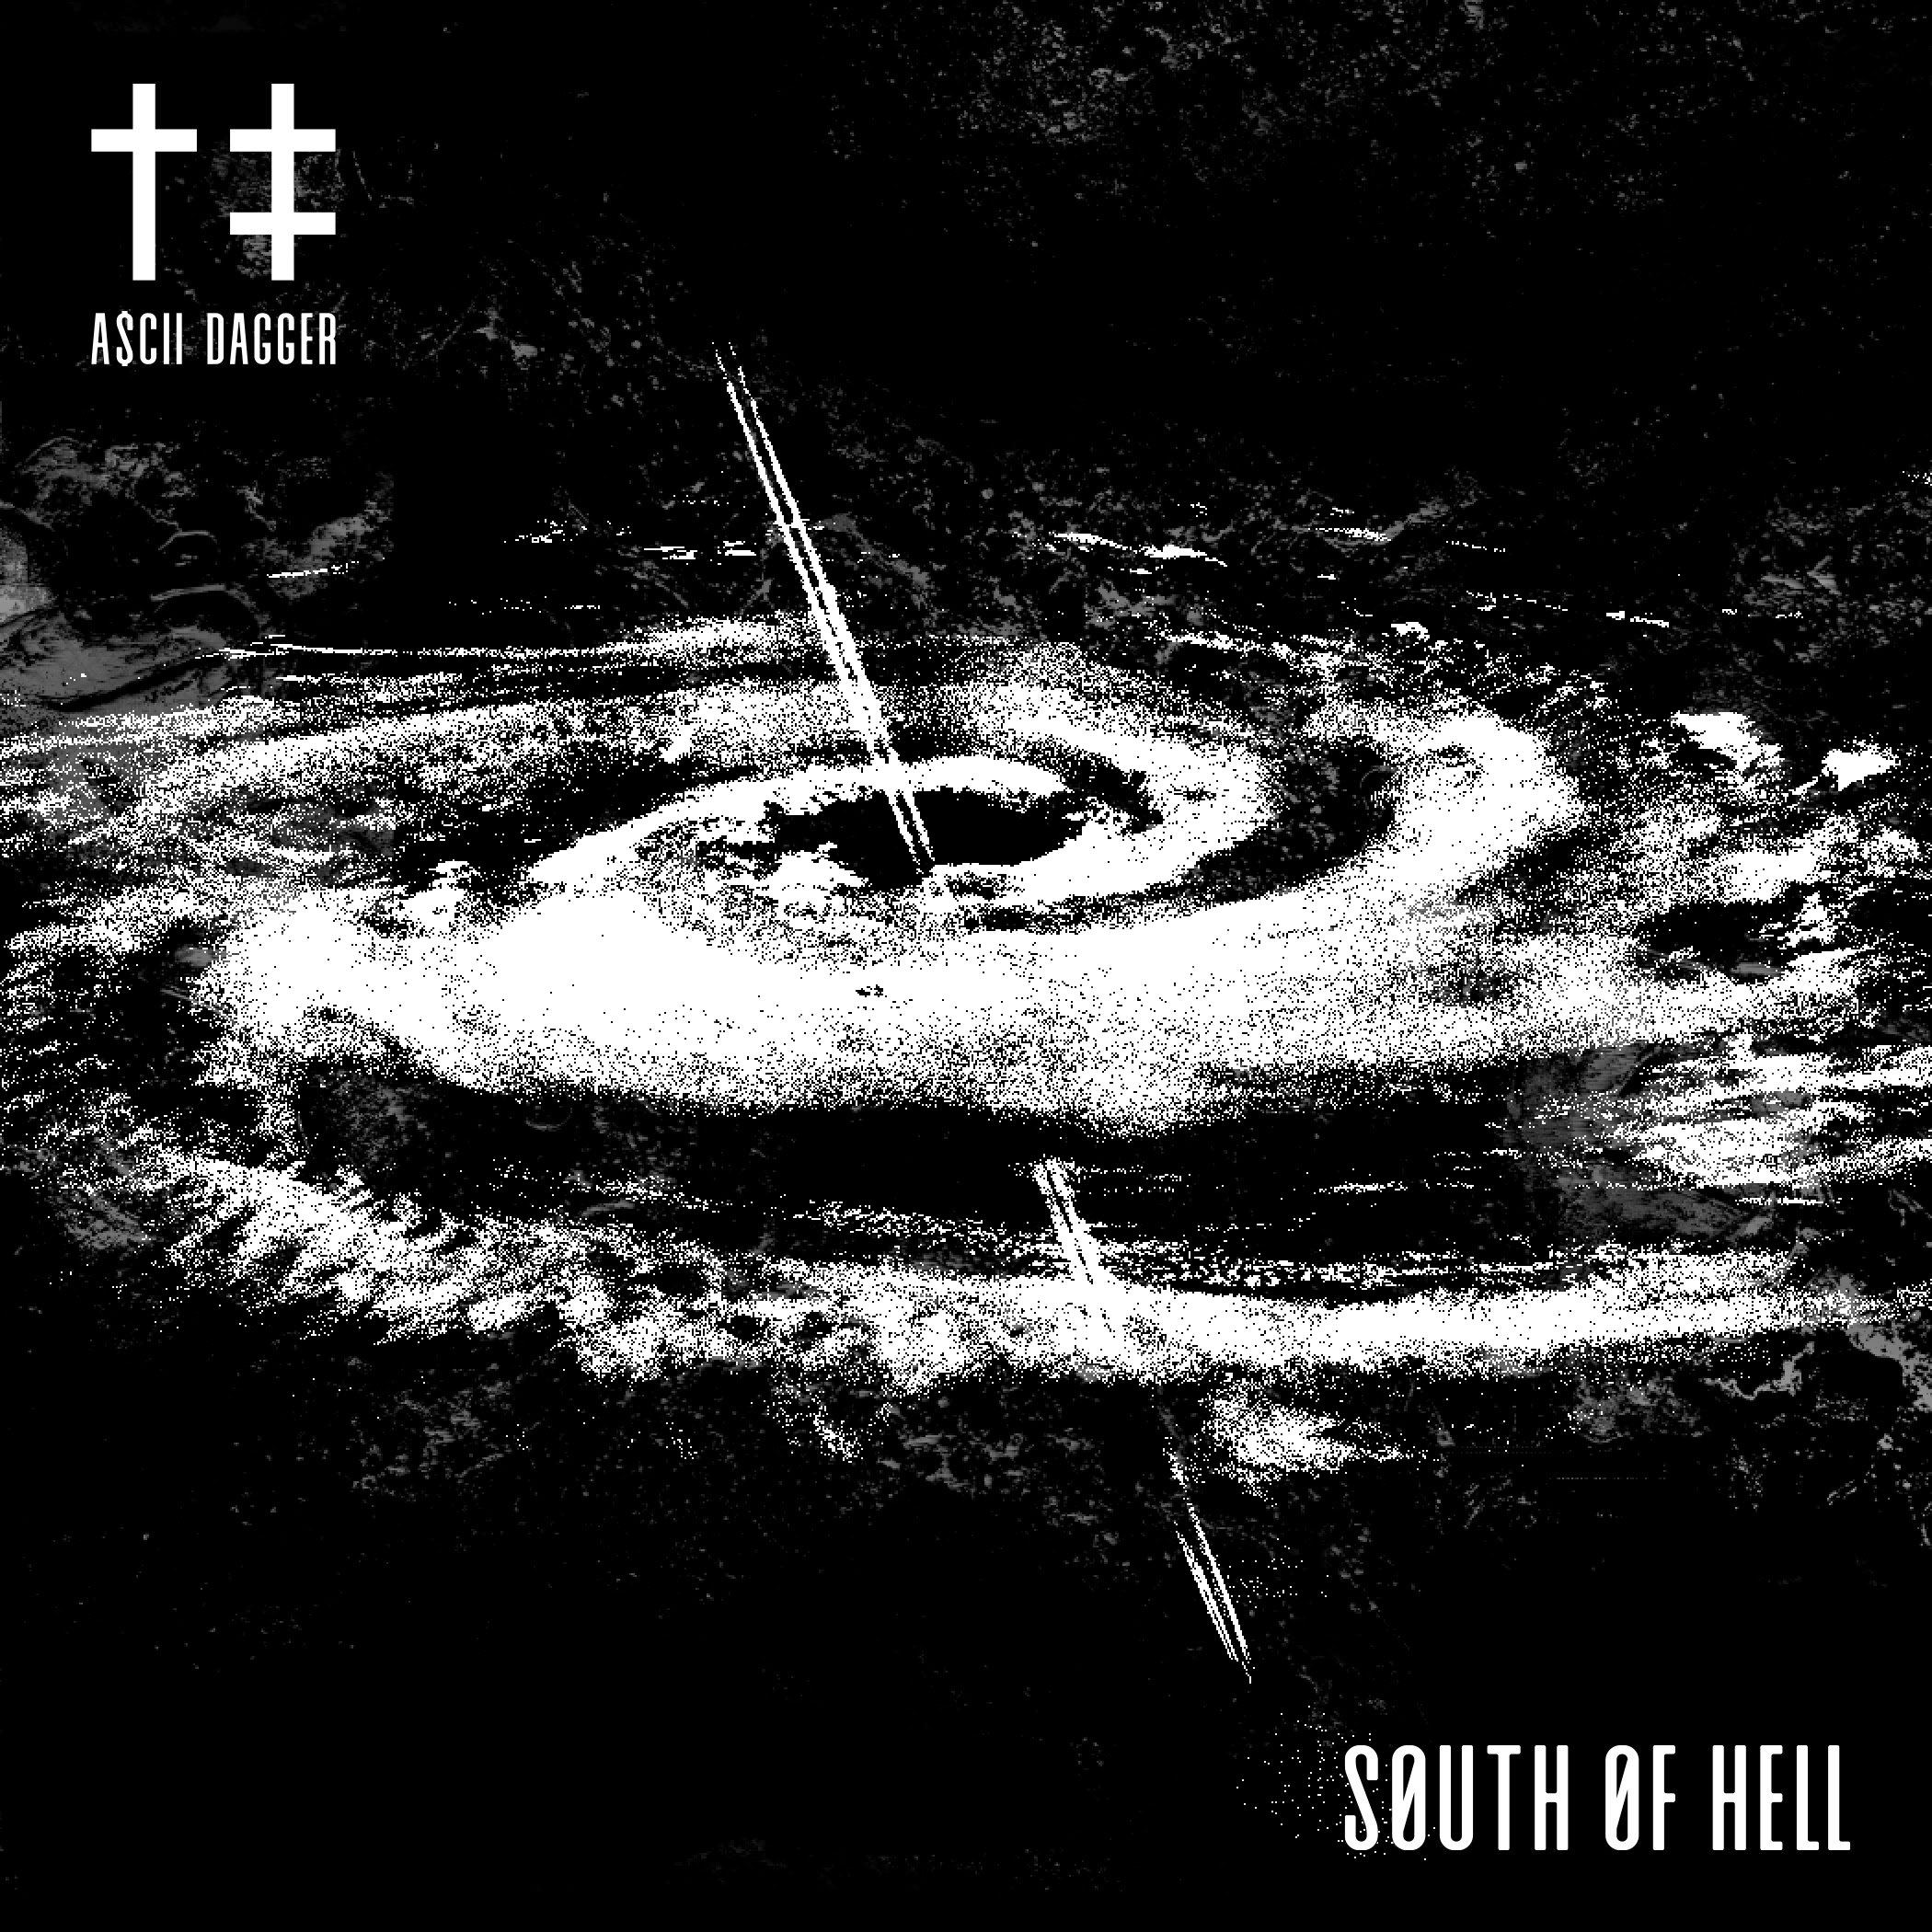 L’EP « South Of Hell » de A$cii Dagger est disponible en digital